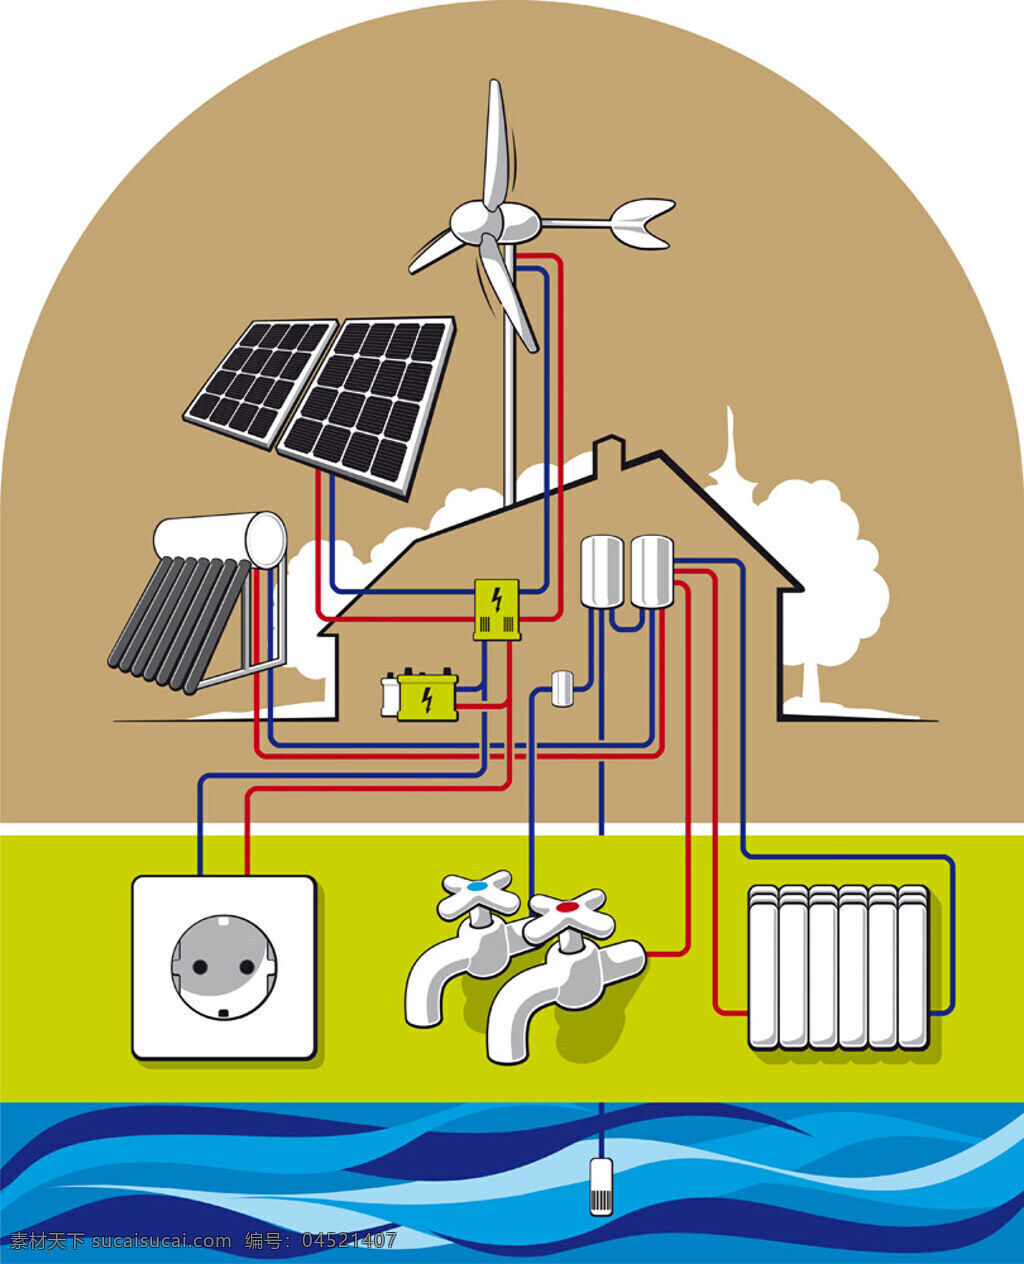 节能环保 漫画 矢量 模板下载 太阳能 水资源 能源保护 生态环保海报 绿色环保 环境保护 底纹背景 按钮图标 标志图标 矢量素材